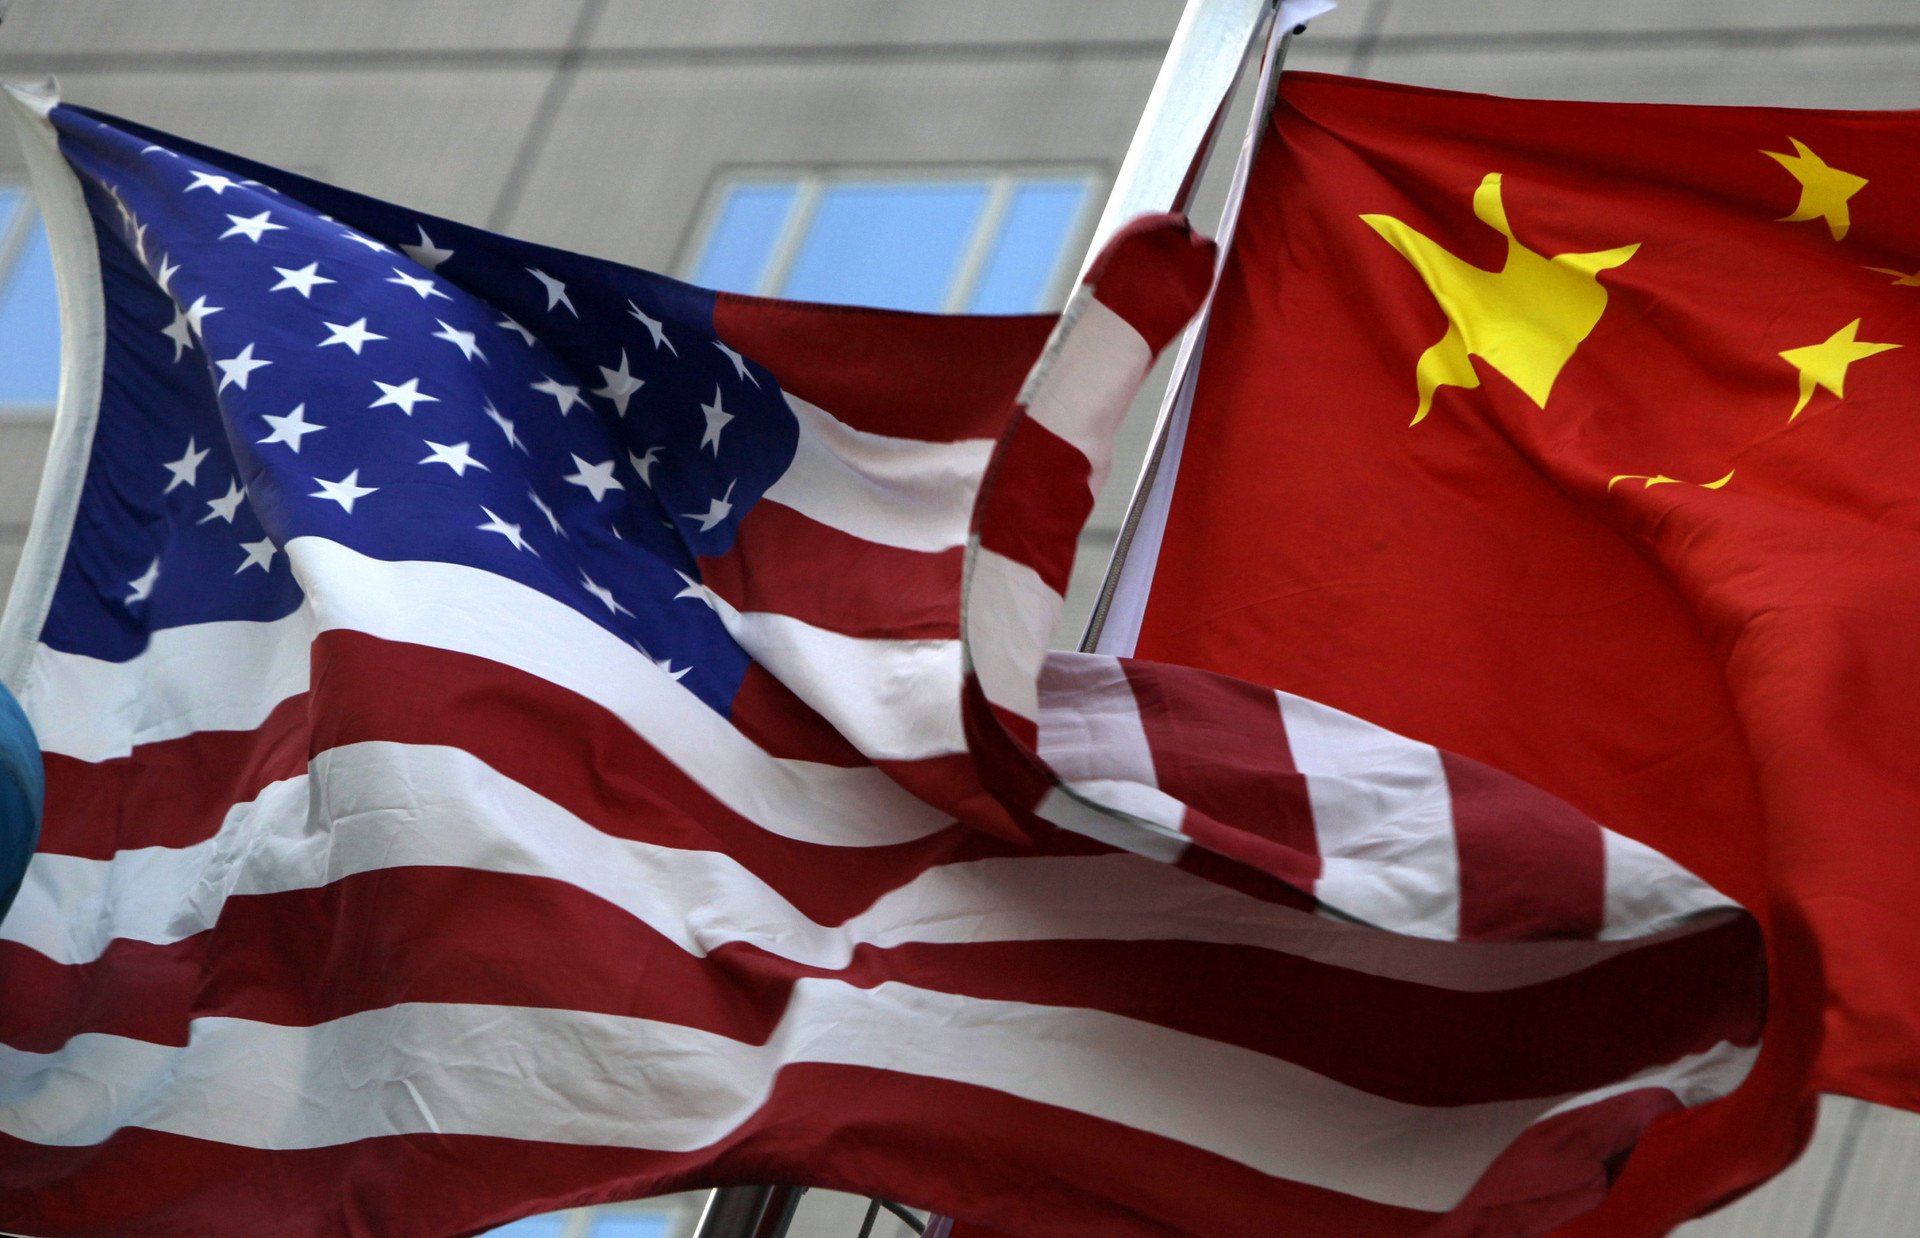 Trung Quốc phản ứng sau loạt lệnh trừng phạt của Mỹ - 1